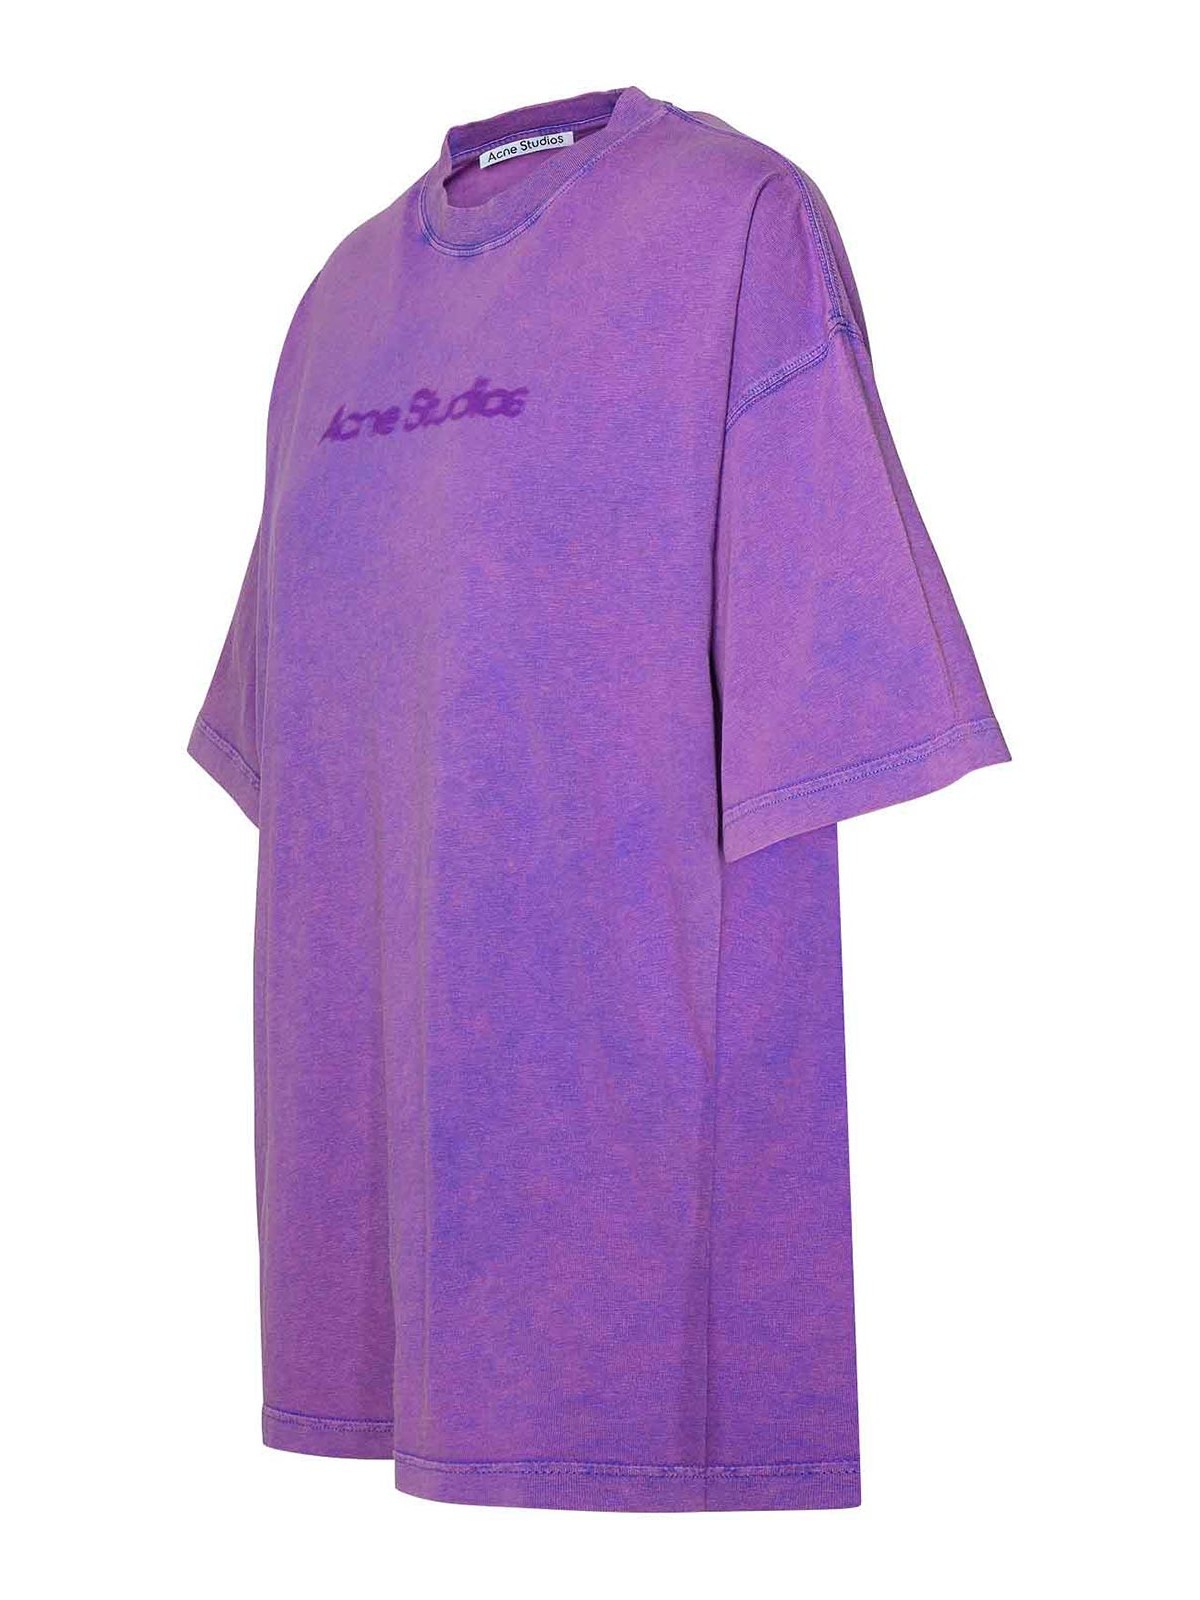 Shop Acne Studios Lilac Cotton T-shirt In Purple